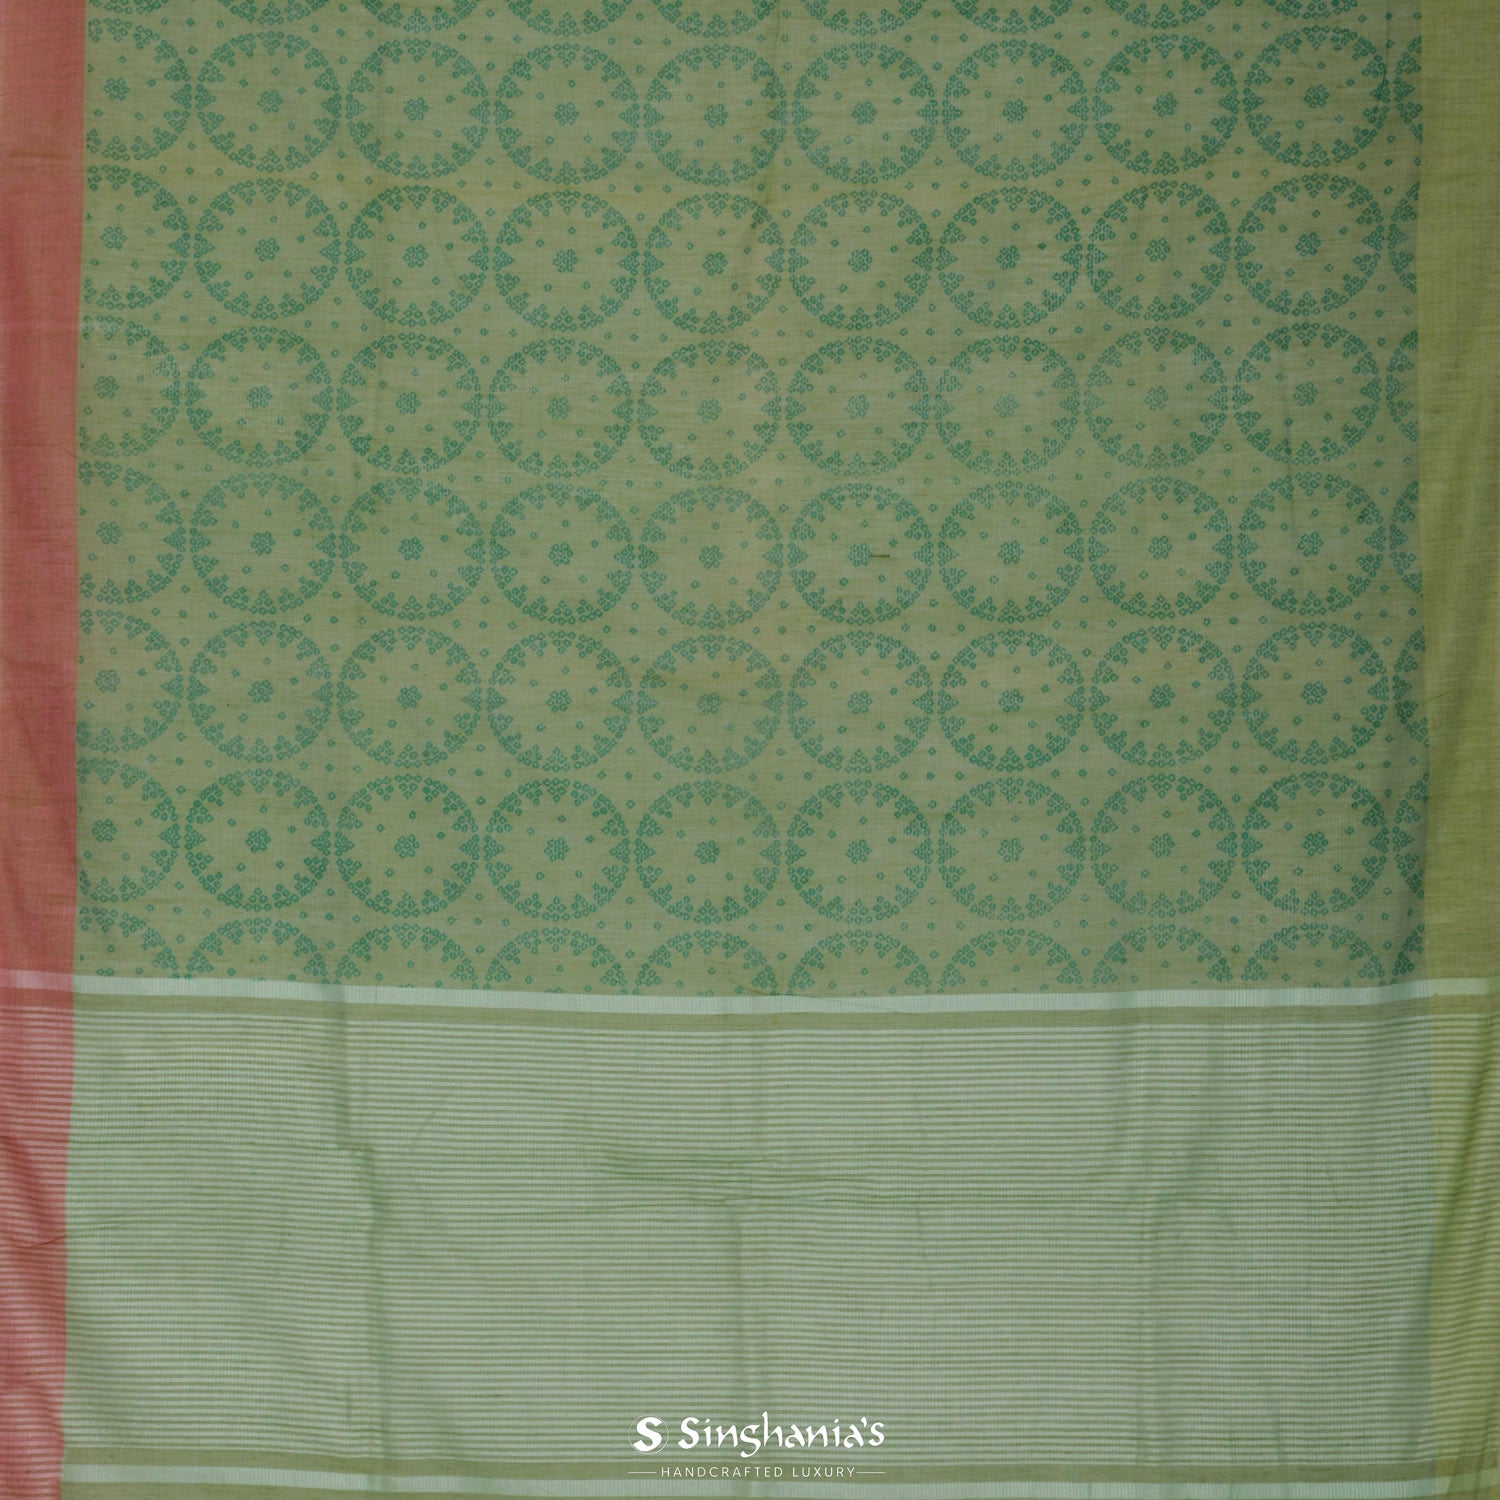 Sage Green Printed Cotton Saree With Bandhini Pattern